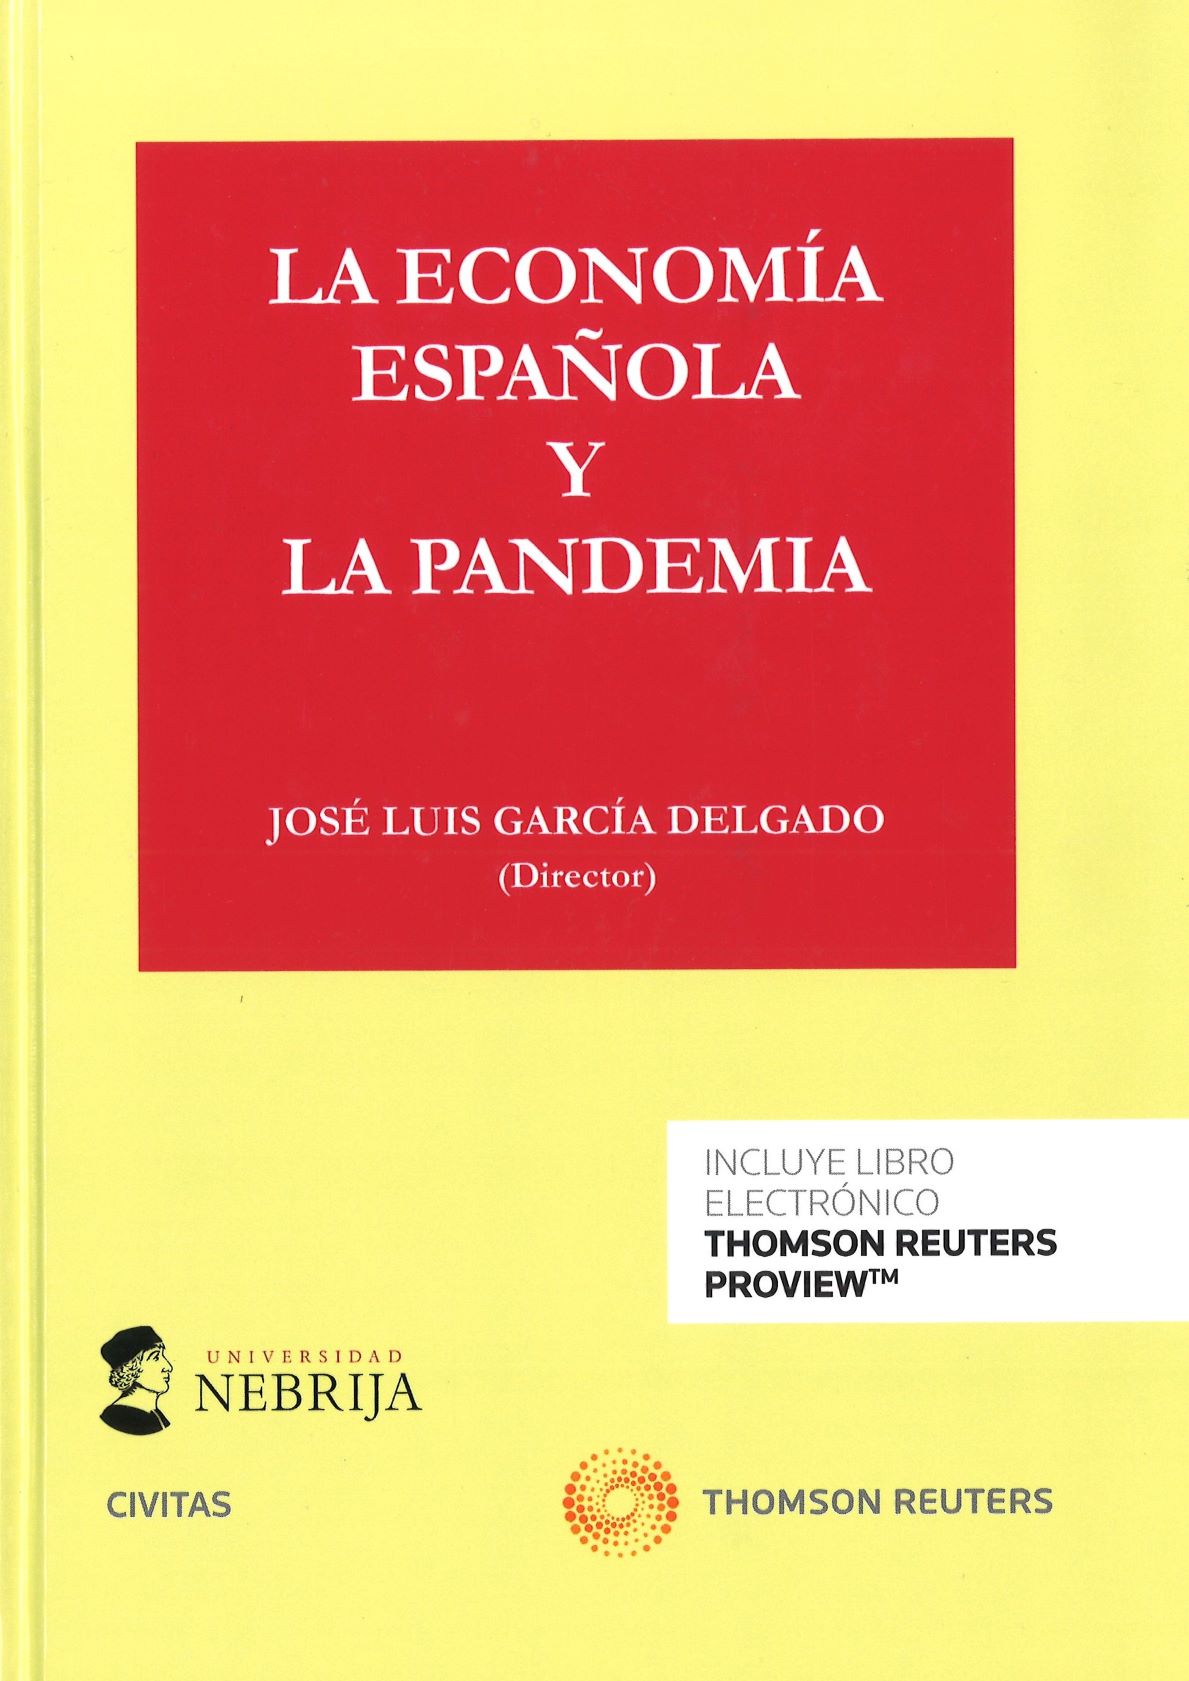 Imagen de portada del libro La economía española y la pandemia